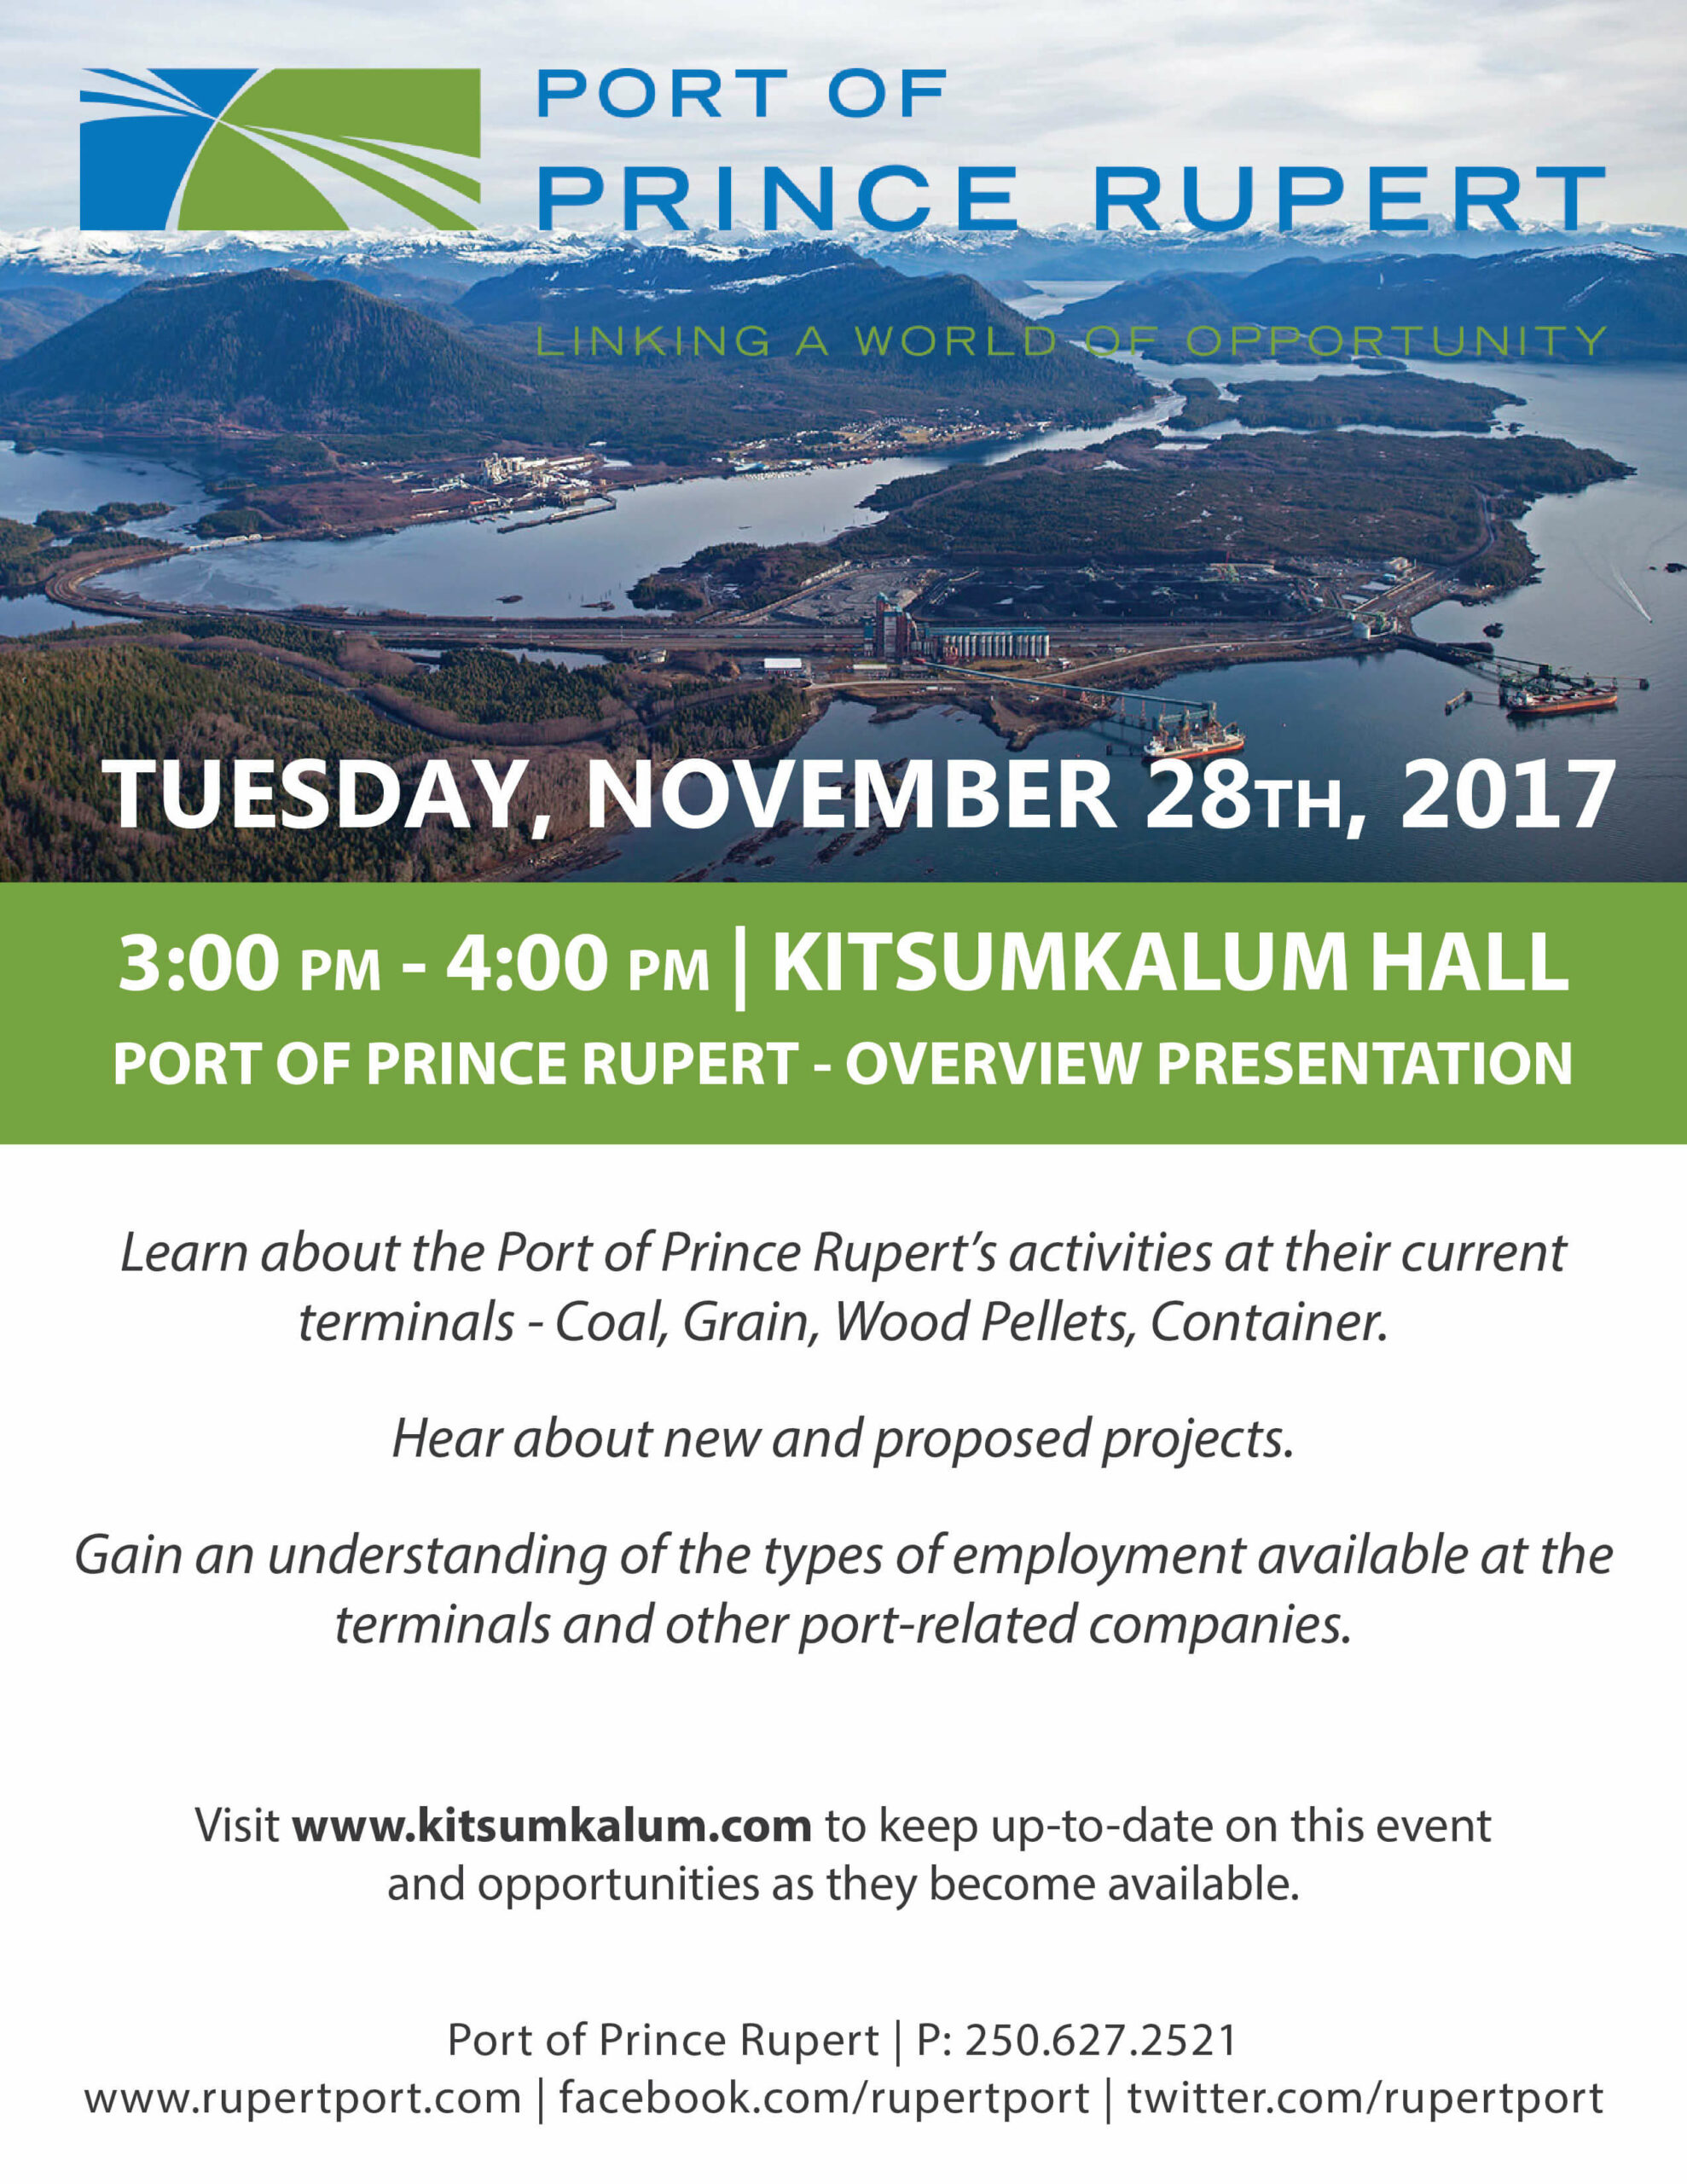 NOV. 28th Port of Prince Rupert Overview Presentation